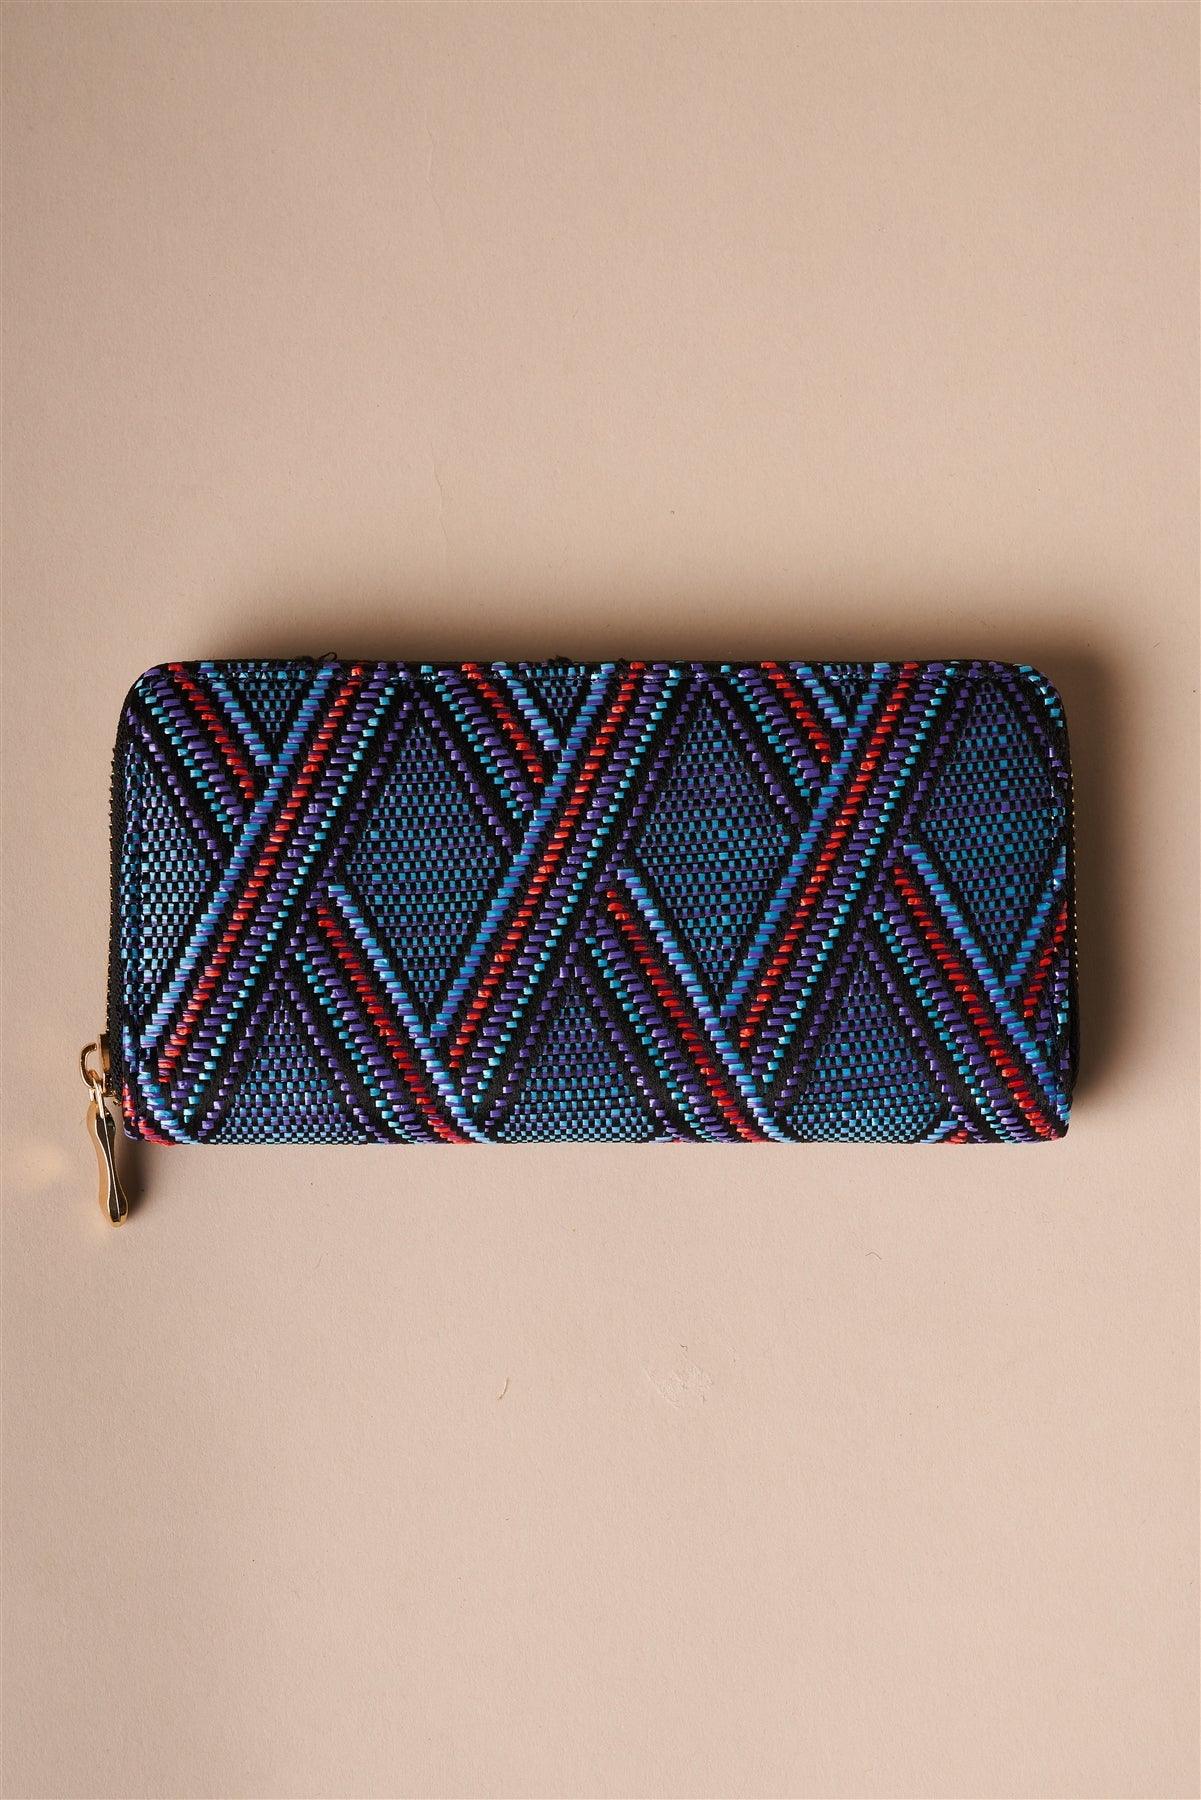 Blue Multi-colored Zipper Wallet /3 Pieces